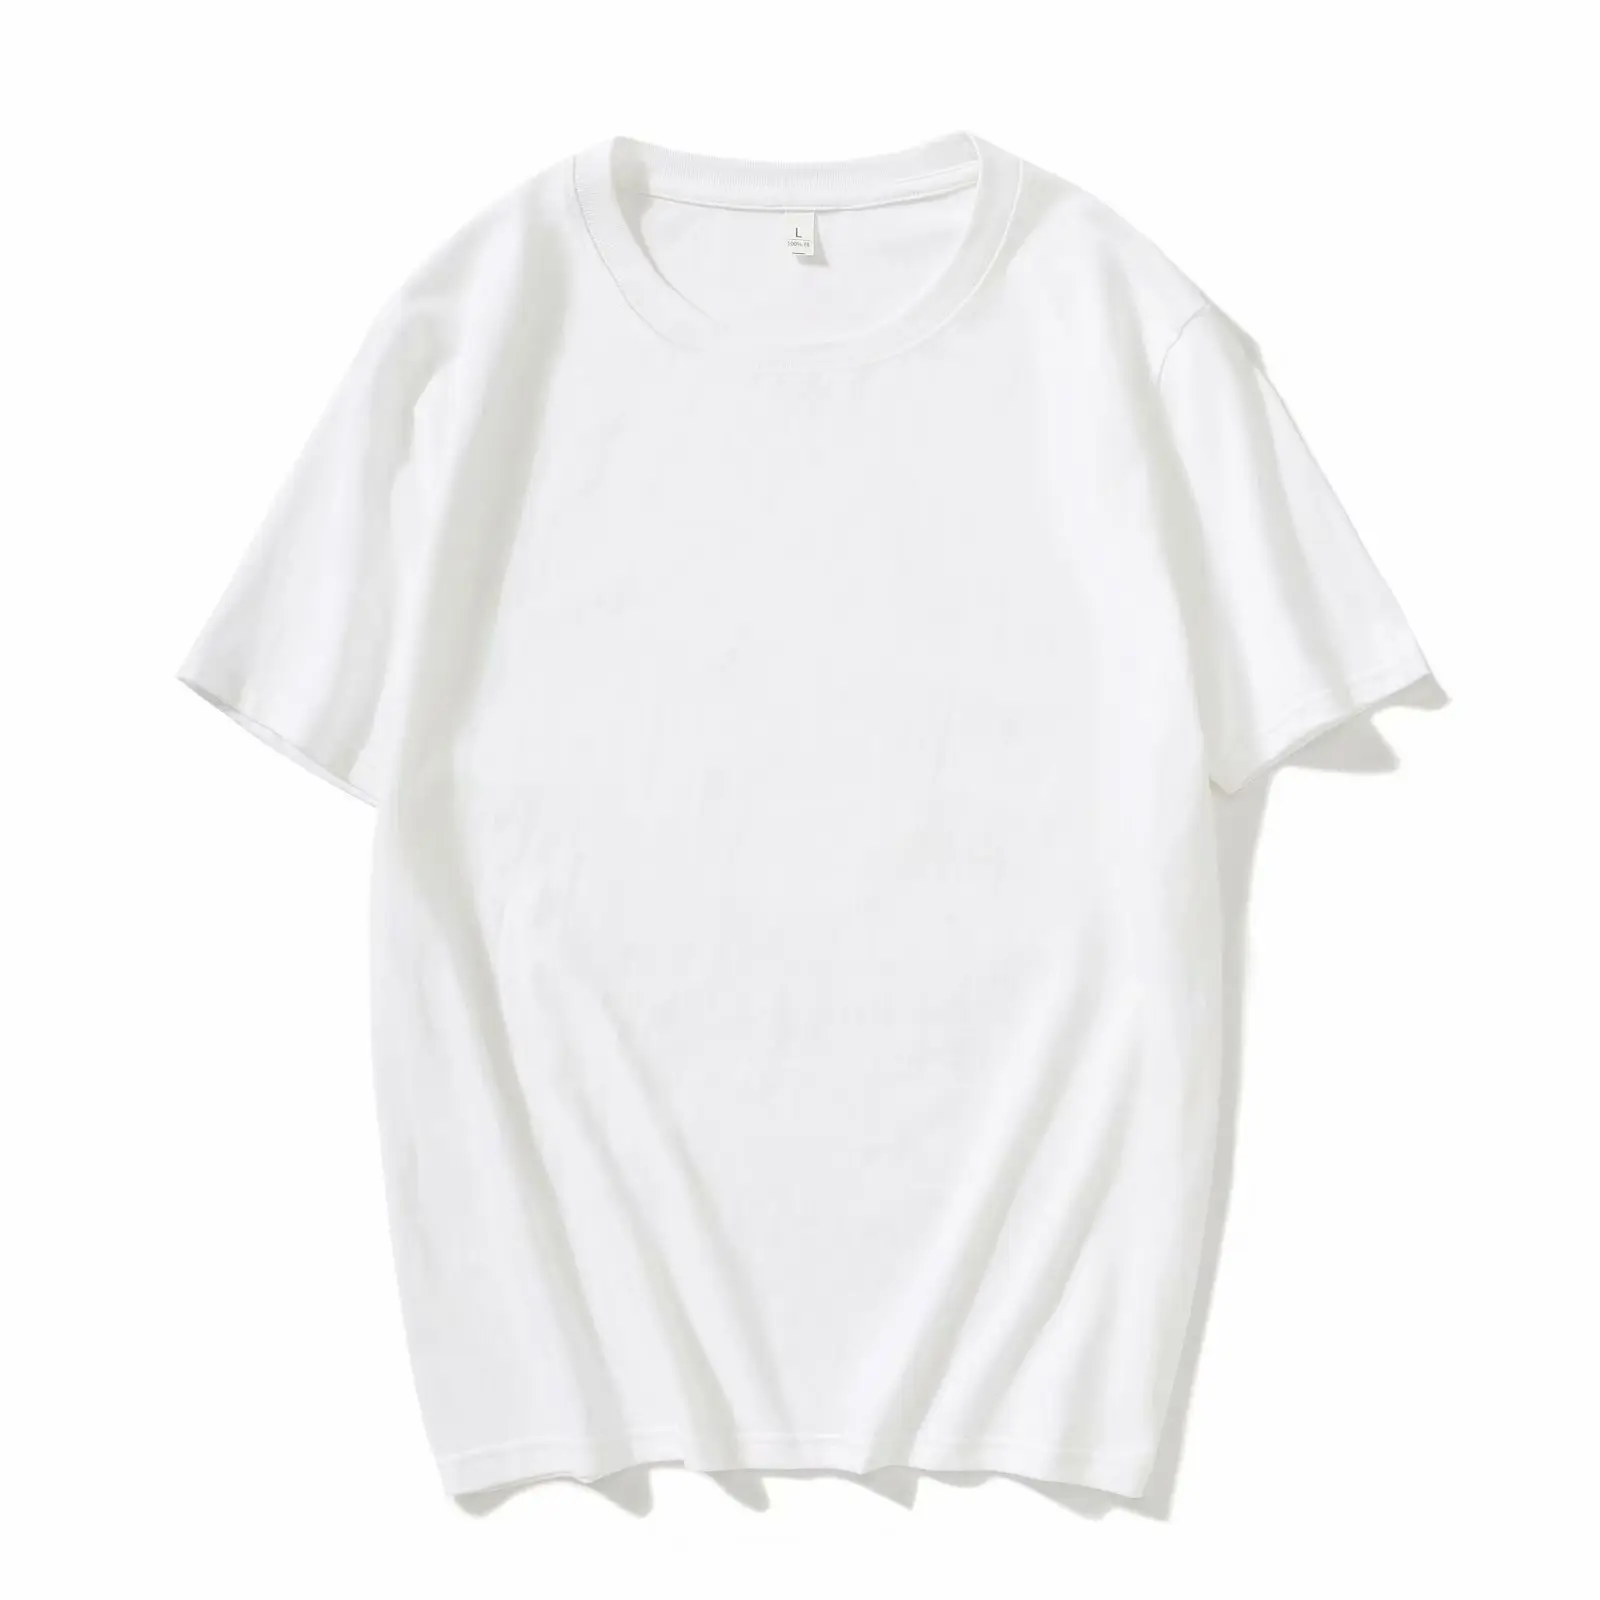 Maglietta girocollo in puro cotone, servizio di gruppo 2021, T-shirt pubblicitaria aziendale, logo stampato a maniche corte